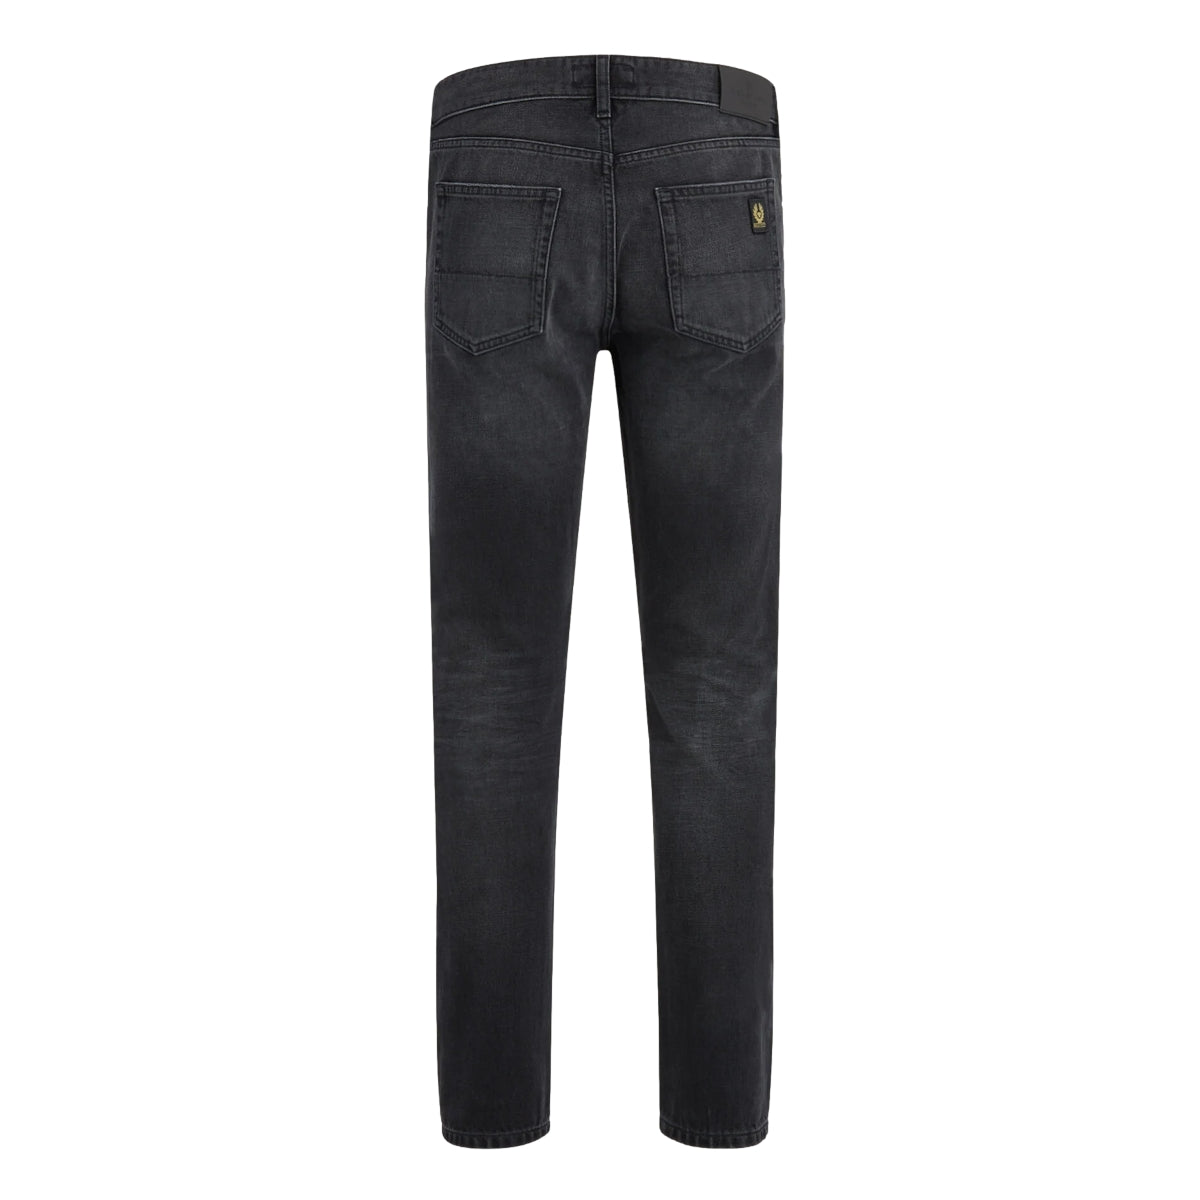 Belstaff Longton Slim Jeans 90103 Washed Black